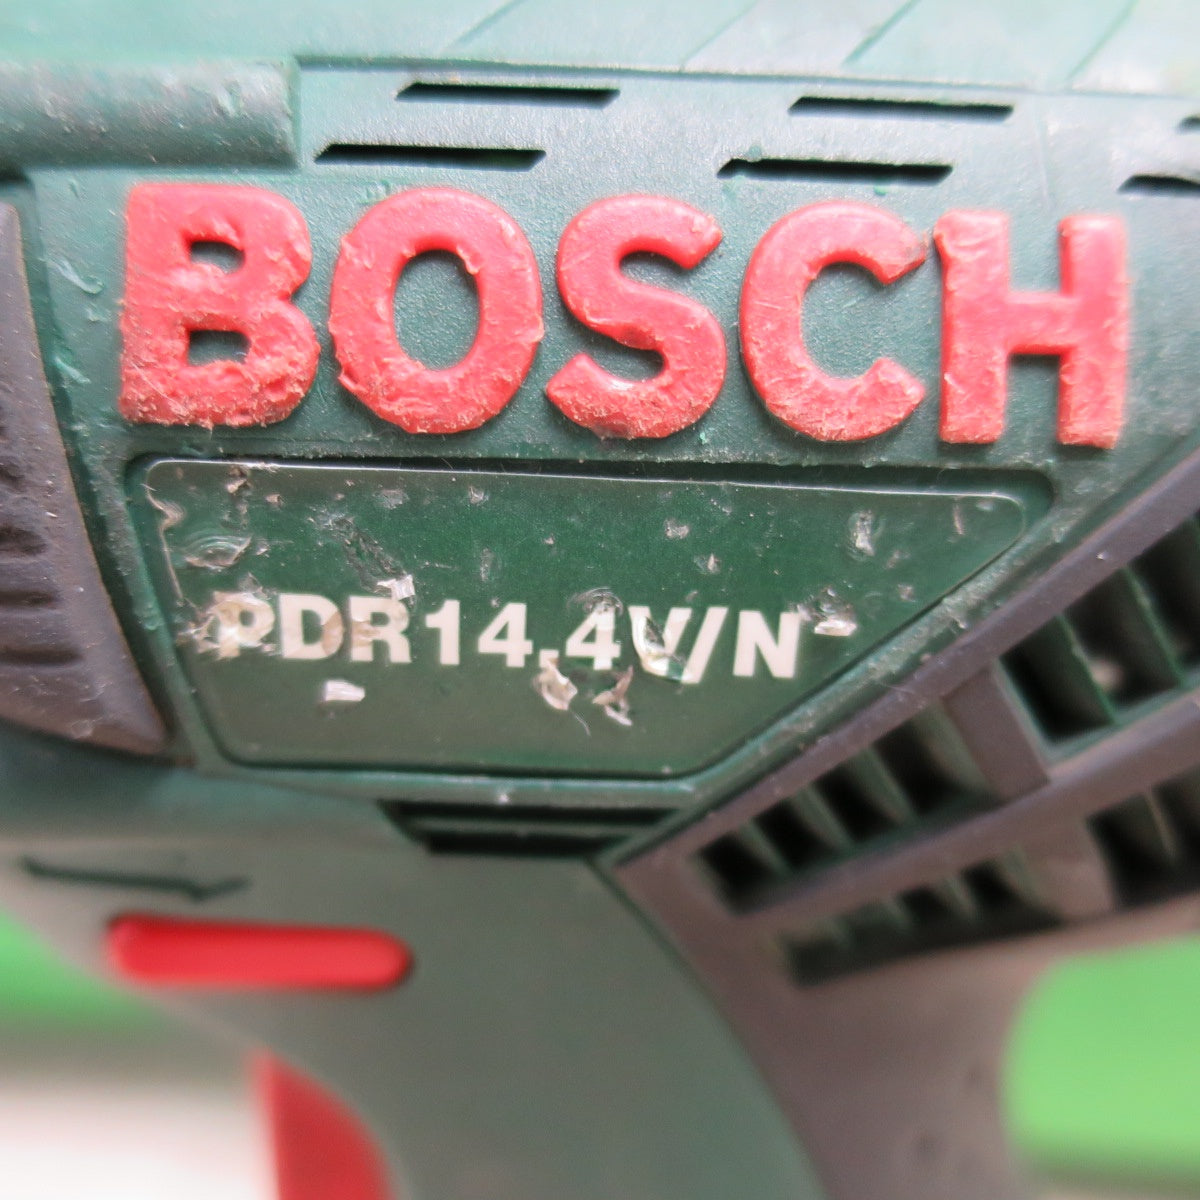 [送料無料] バッテリー2個付☆BOSCH 充電式 インパクトドライバー PDR14.4V/N 充電器 AL1450DV 電動 工具 ボッシュ☆